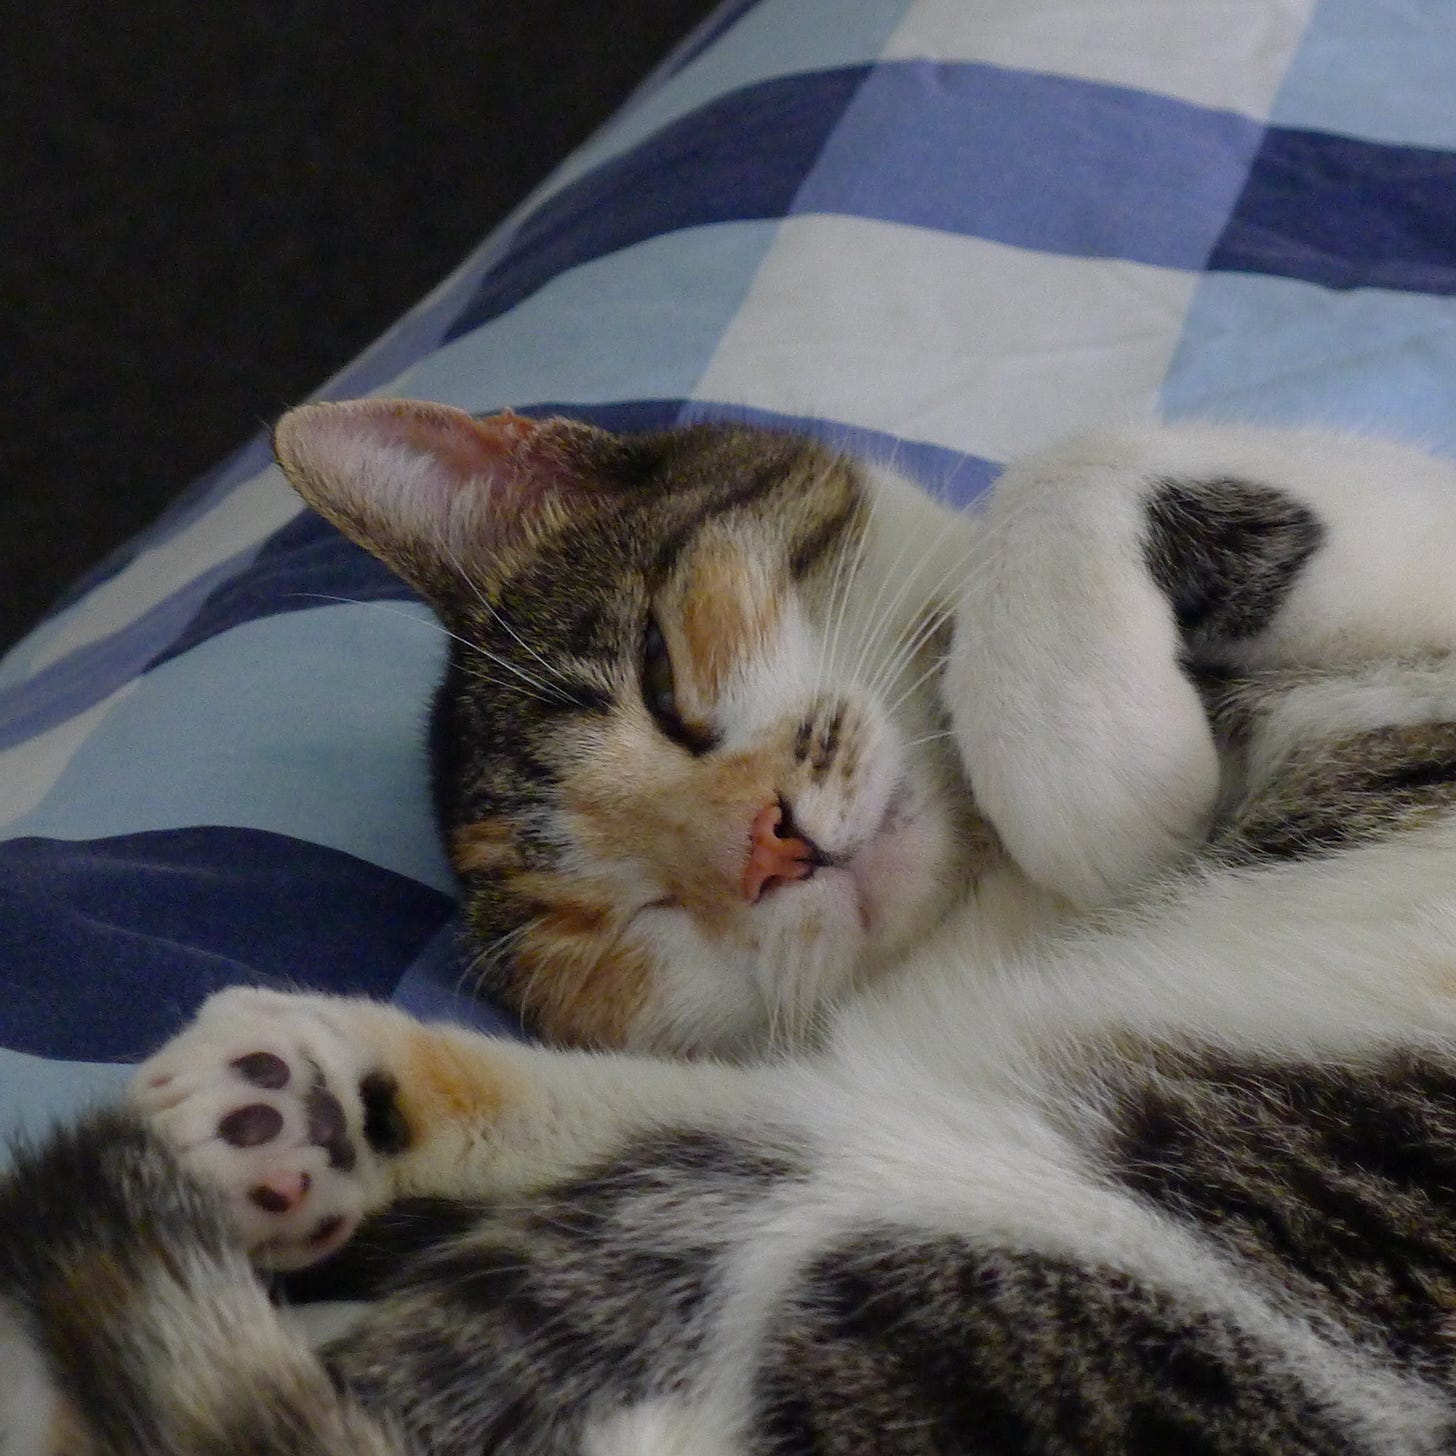 a cute cat half asleep on some duvet